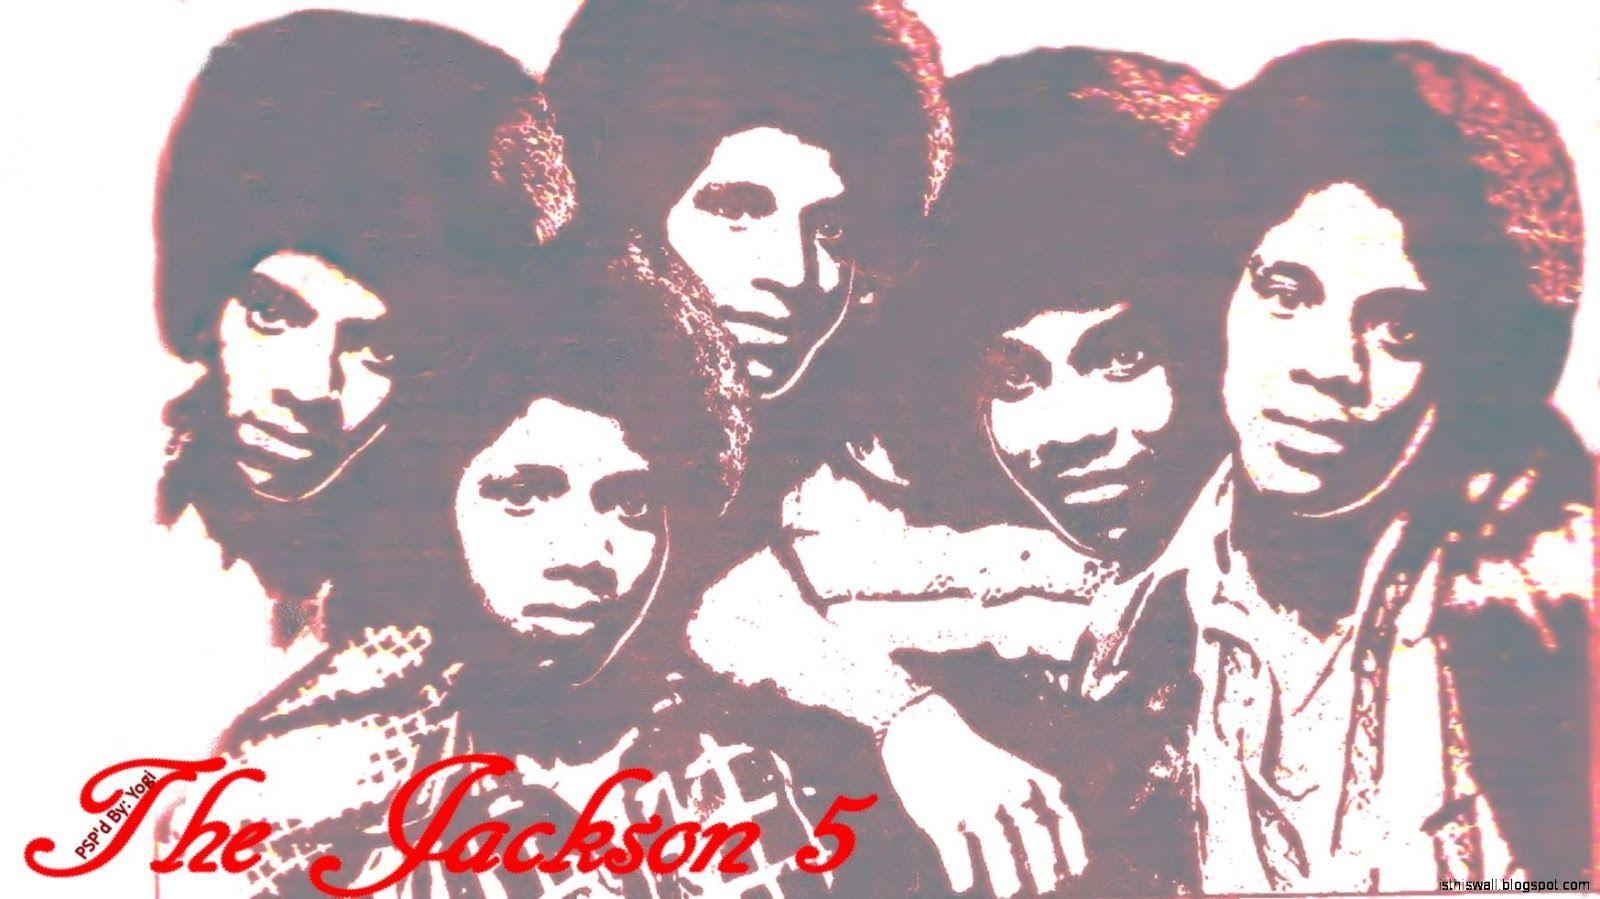 Free Jackson 5 HD Wallpaper